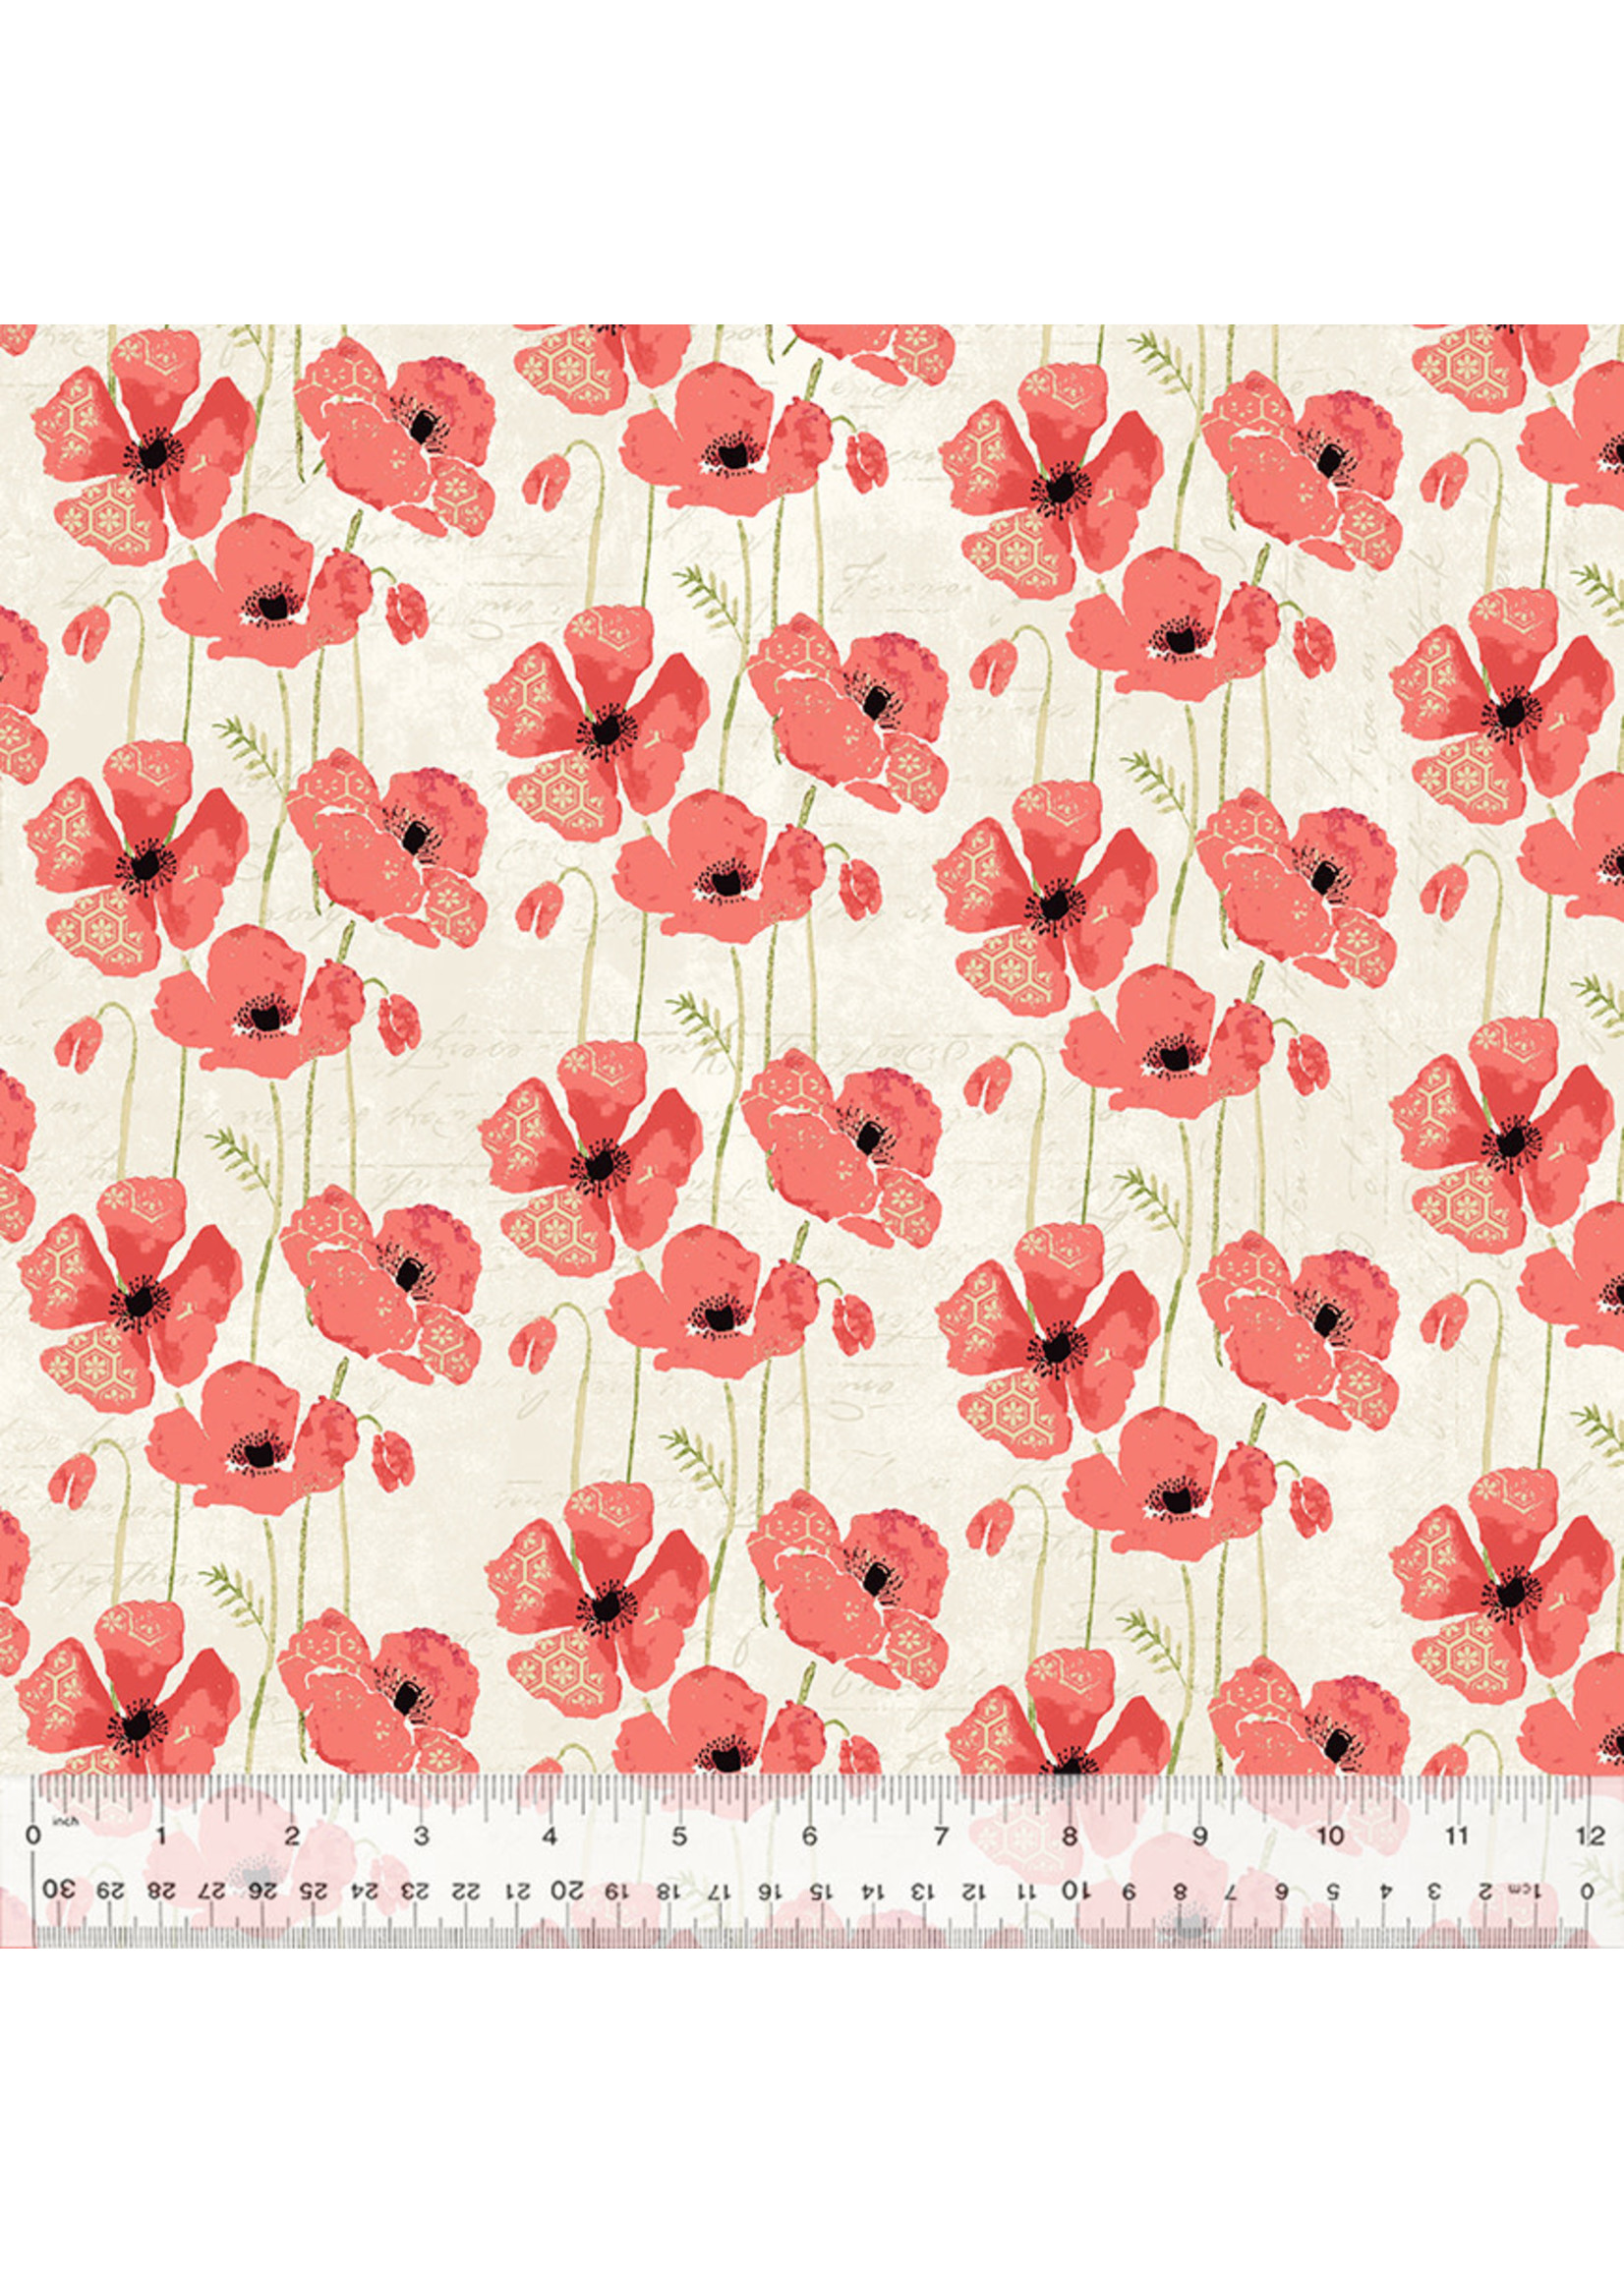 Windham Fabrics Poppy - Ivory - 2508-811